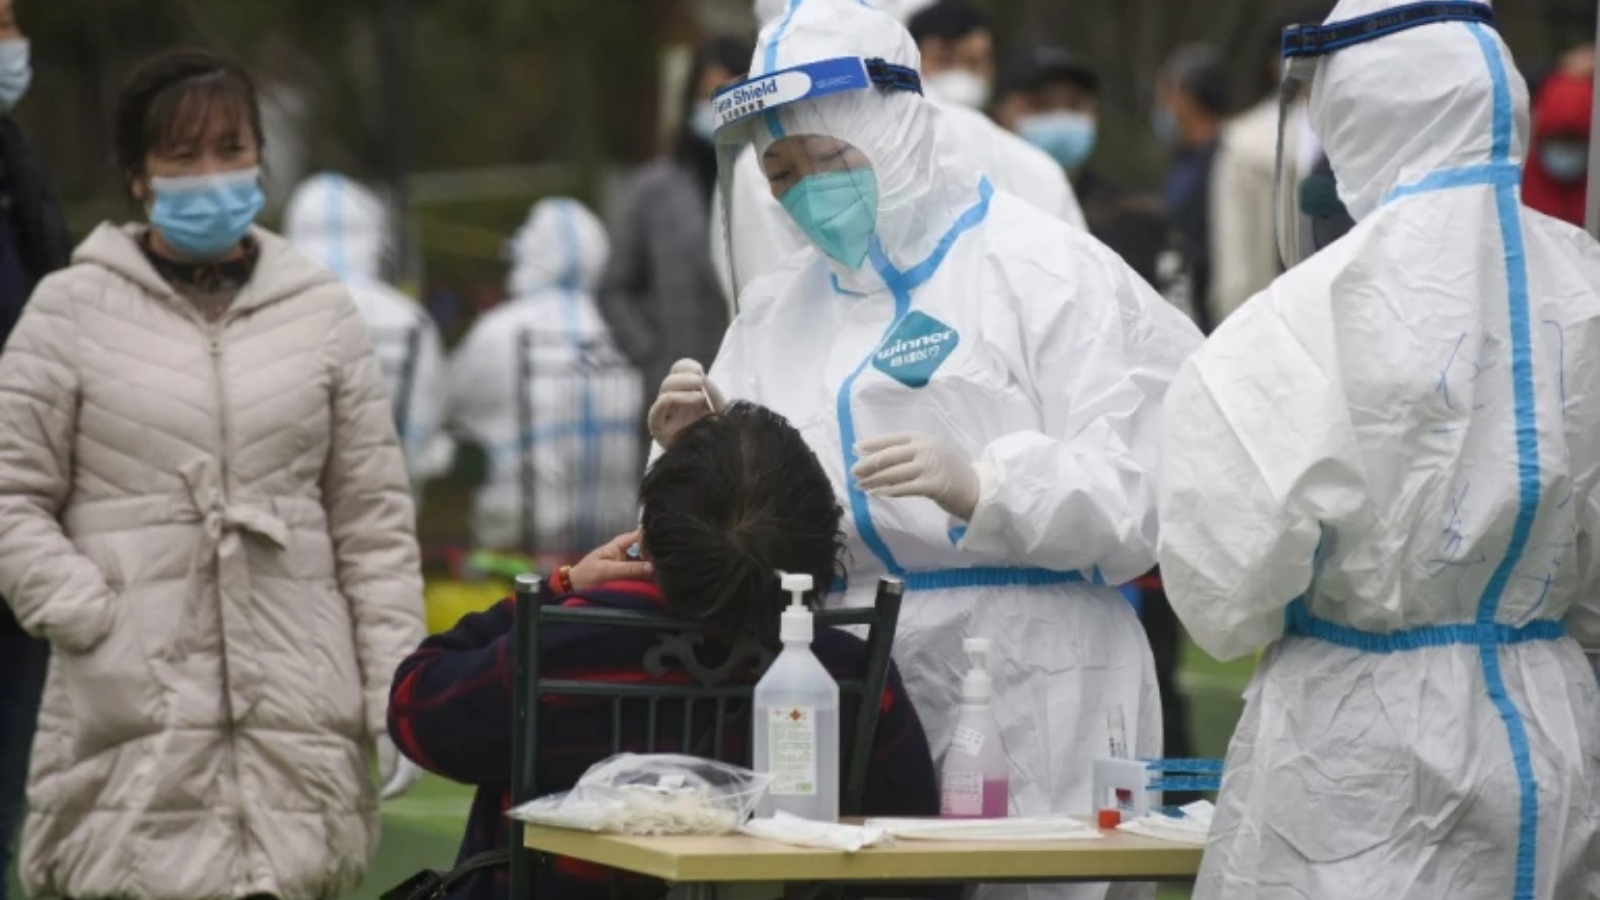 مواطن يخضع لاختبارات الحمض النووي لفيروس كورونا كوفيد 19 في مقاطعة تشجيانغ بشرق الصين الأسبوع الماضي